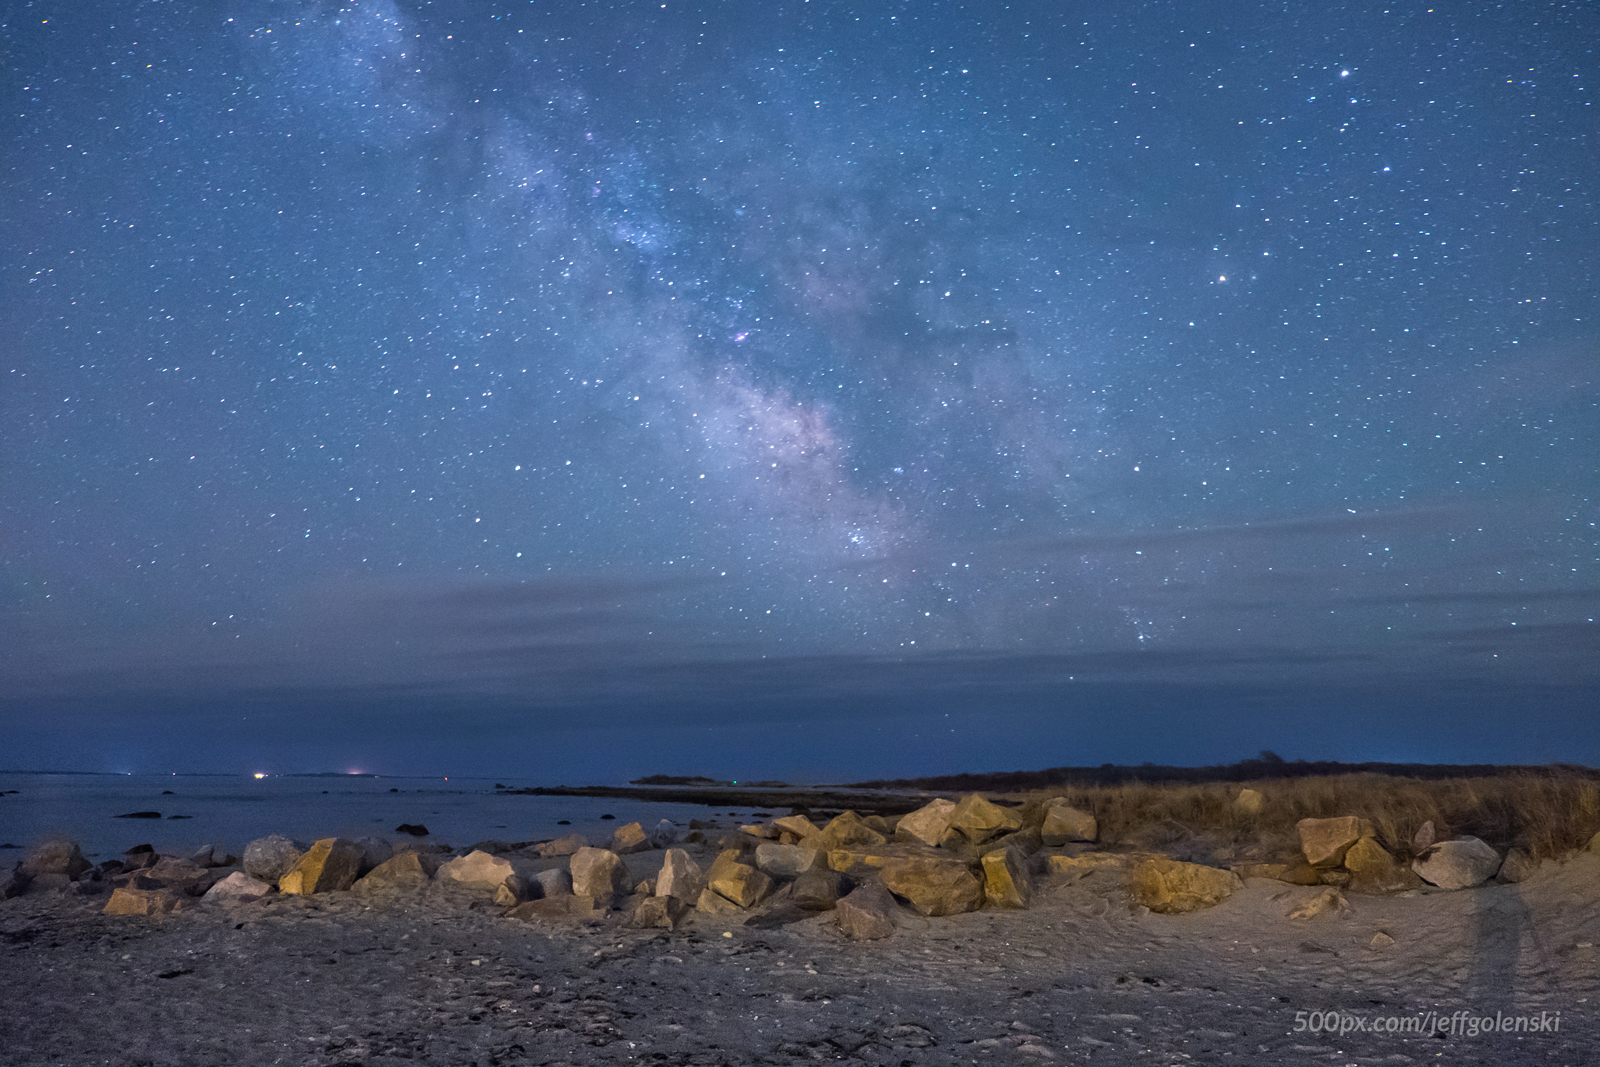 The Milky Way Galaxy over Gooseberry Island in Westport, Massachusetts.